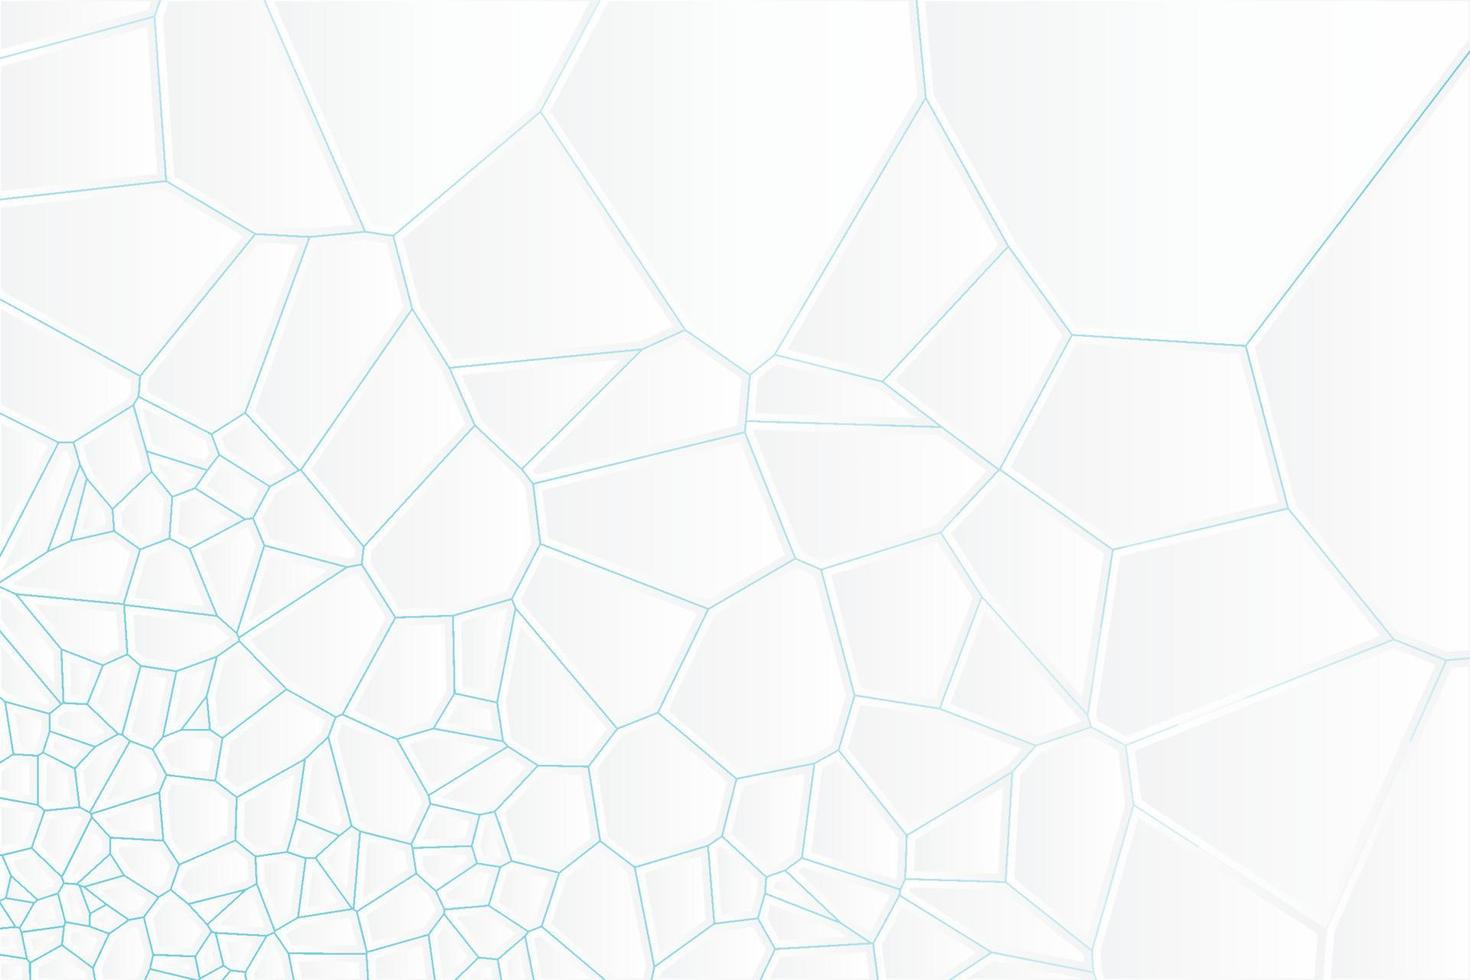 abstracte geëxtrudeerde witte voronoi diagram blokken vector achtergrond. minimale lichte schone bedrijfsmuur. geometrische oppervlakteillustratie met achtergrondverlichting met kleurovergang